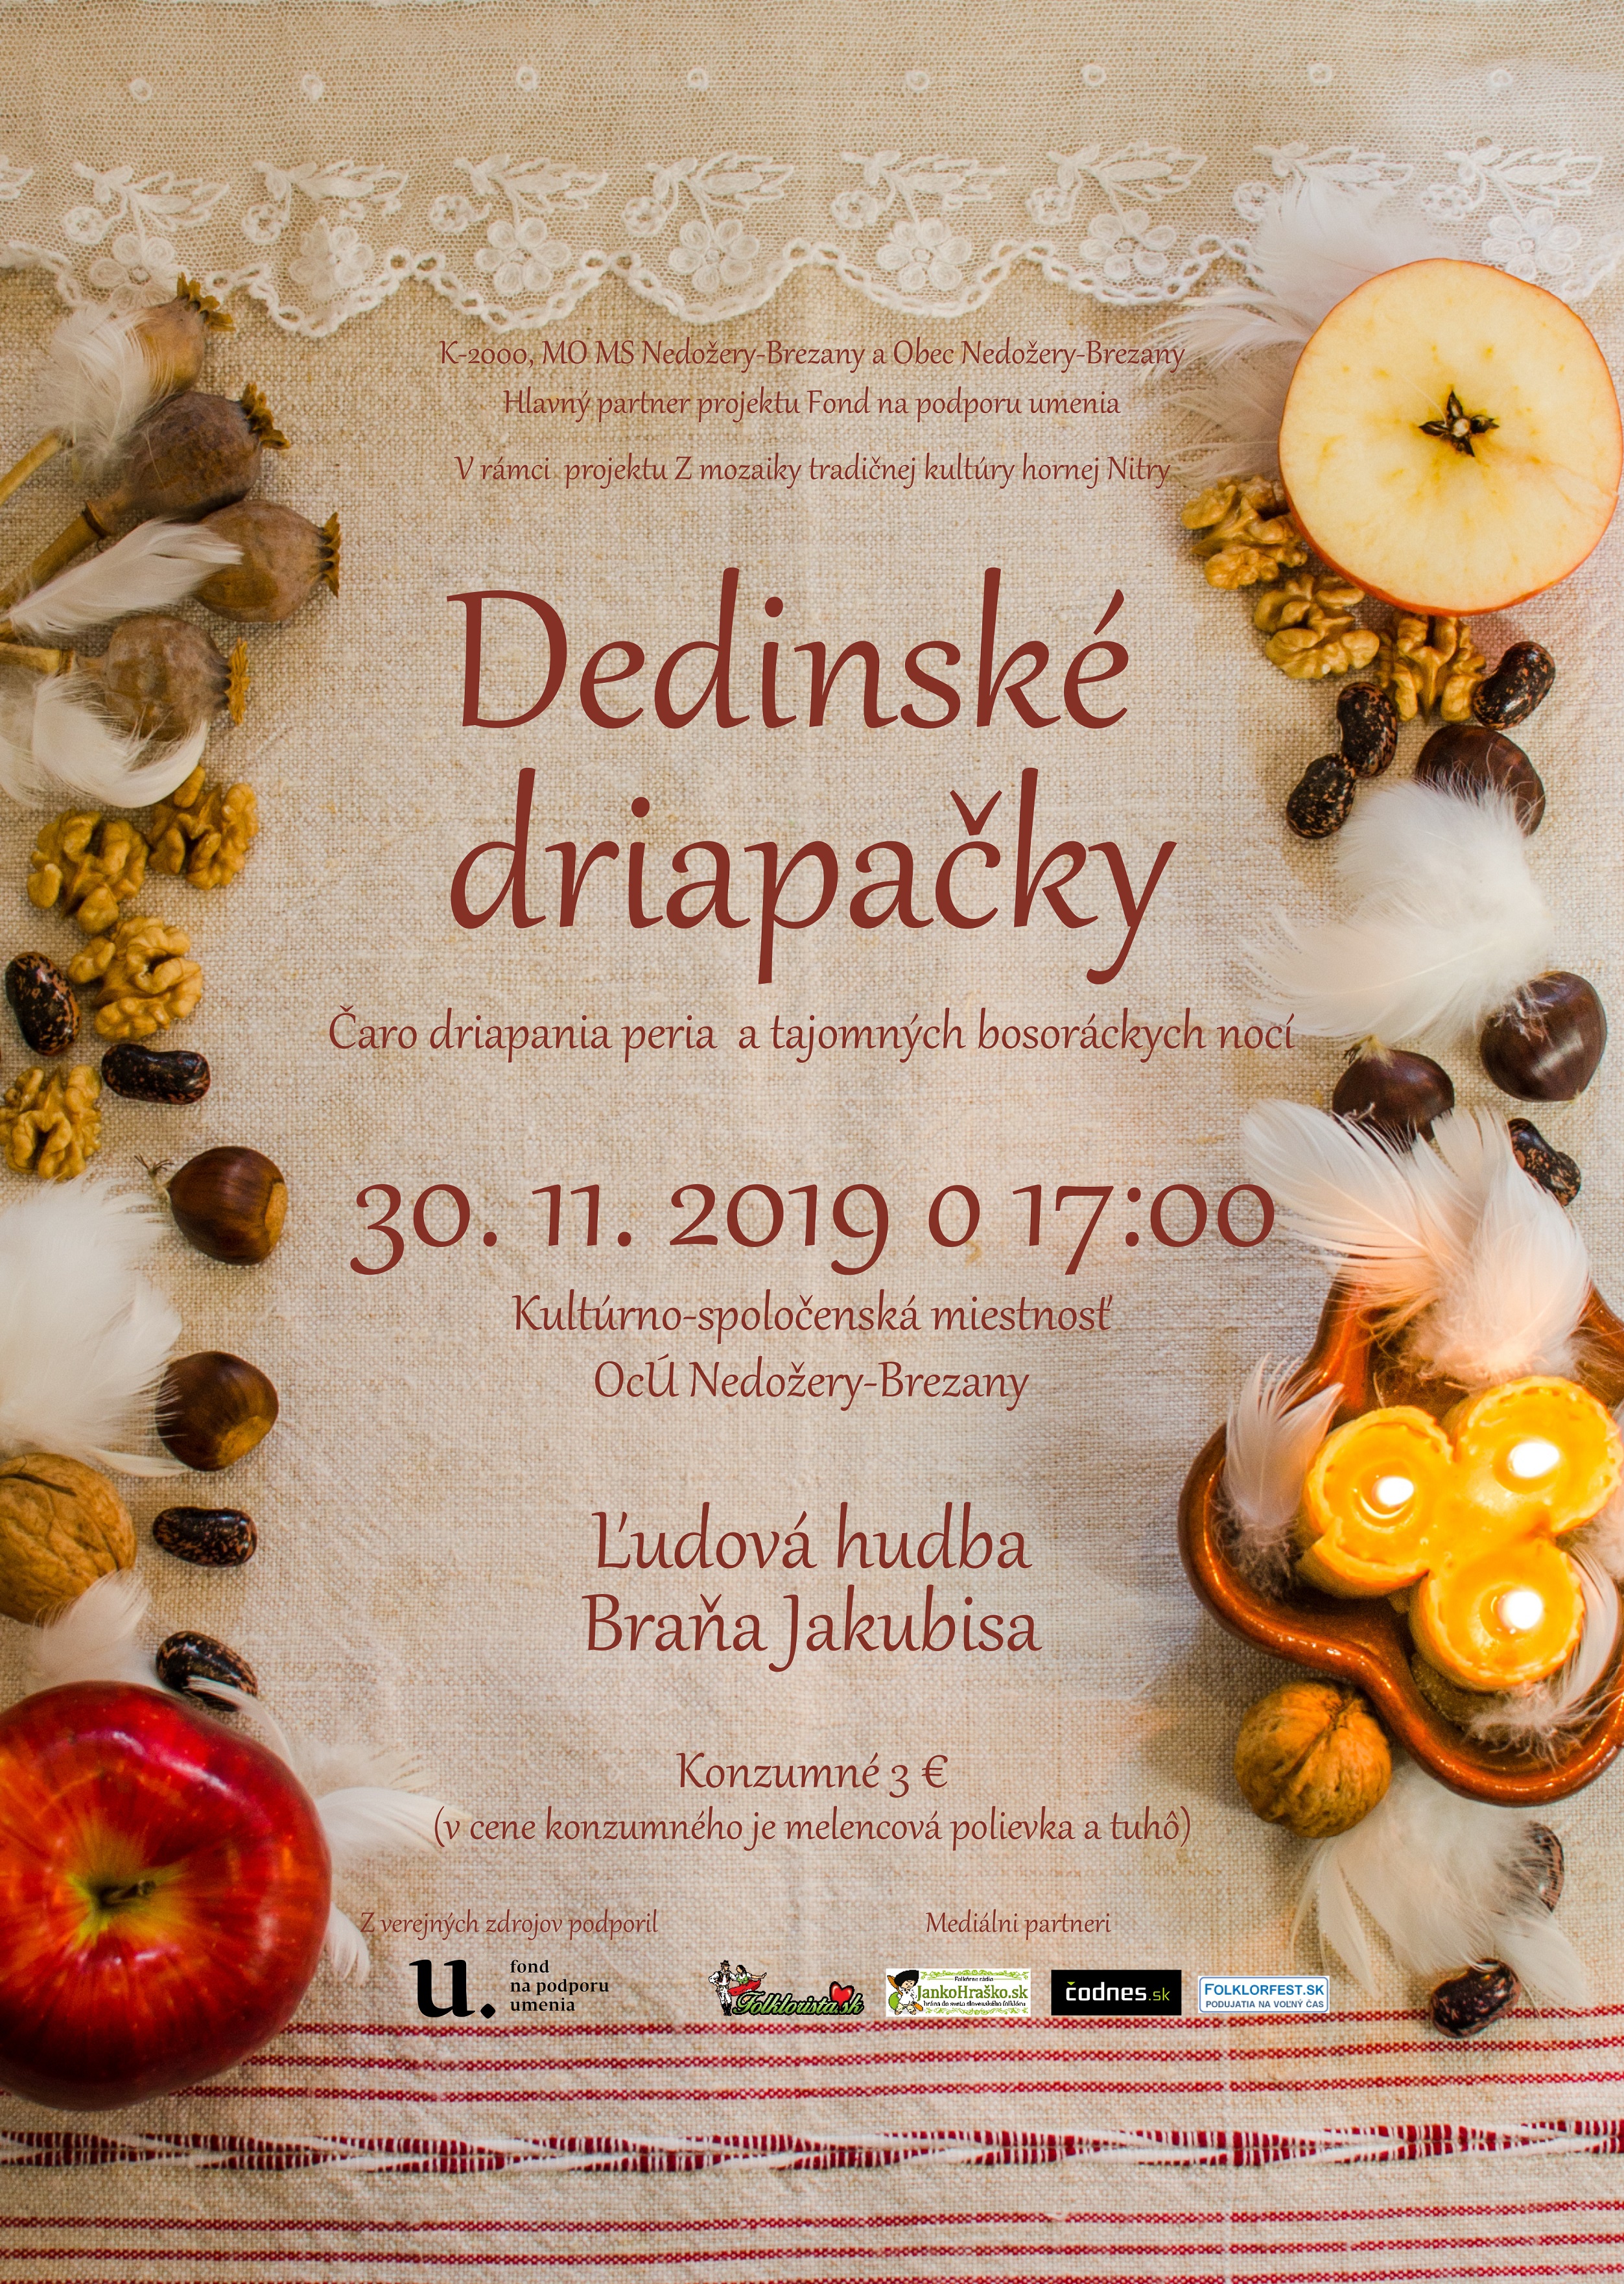 Dedinsk driapaky Nedoery-Brezany 2019 - 6. ronk